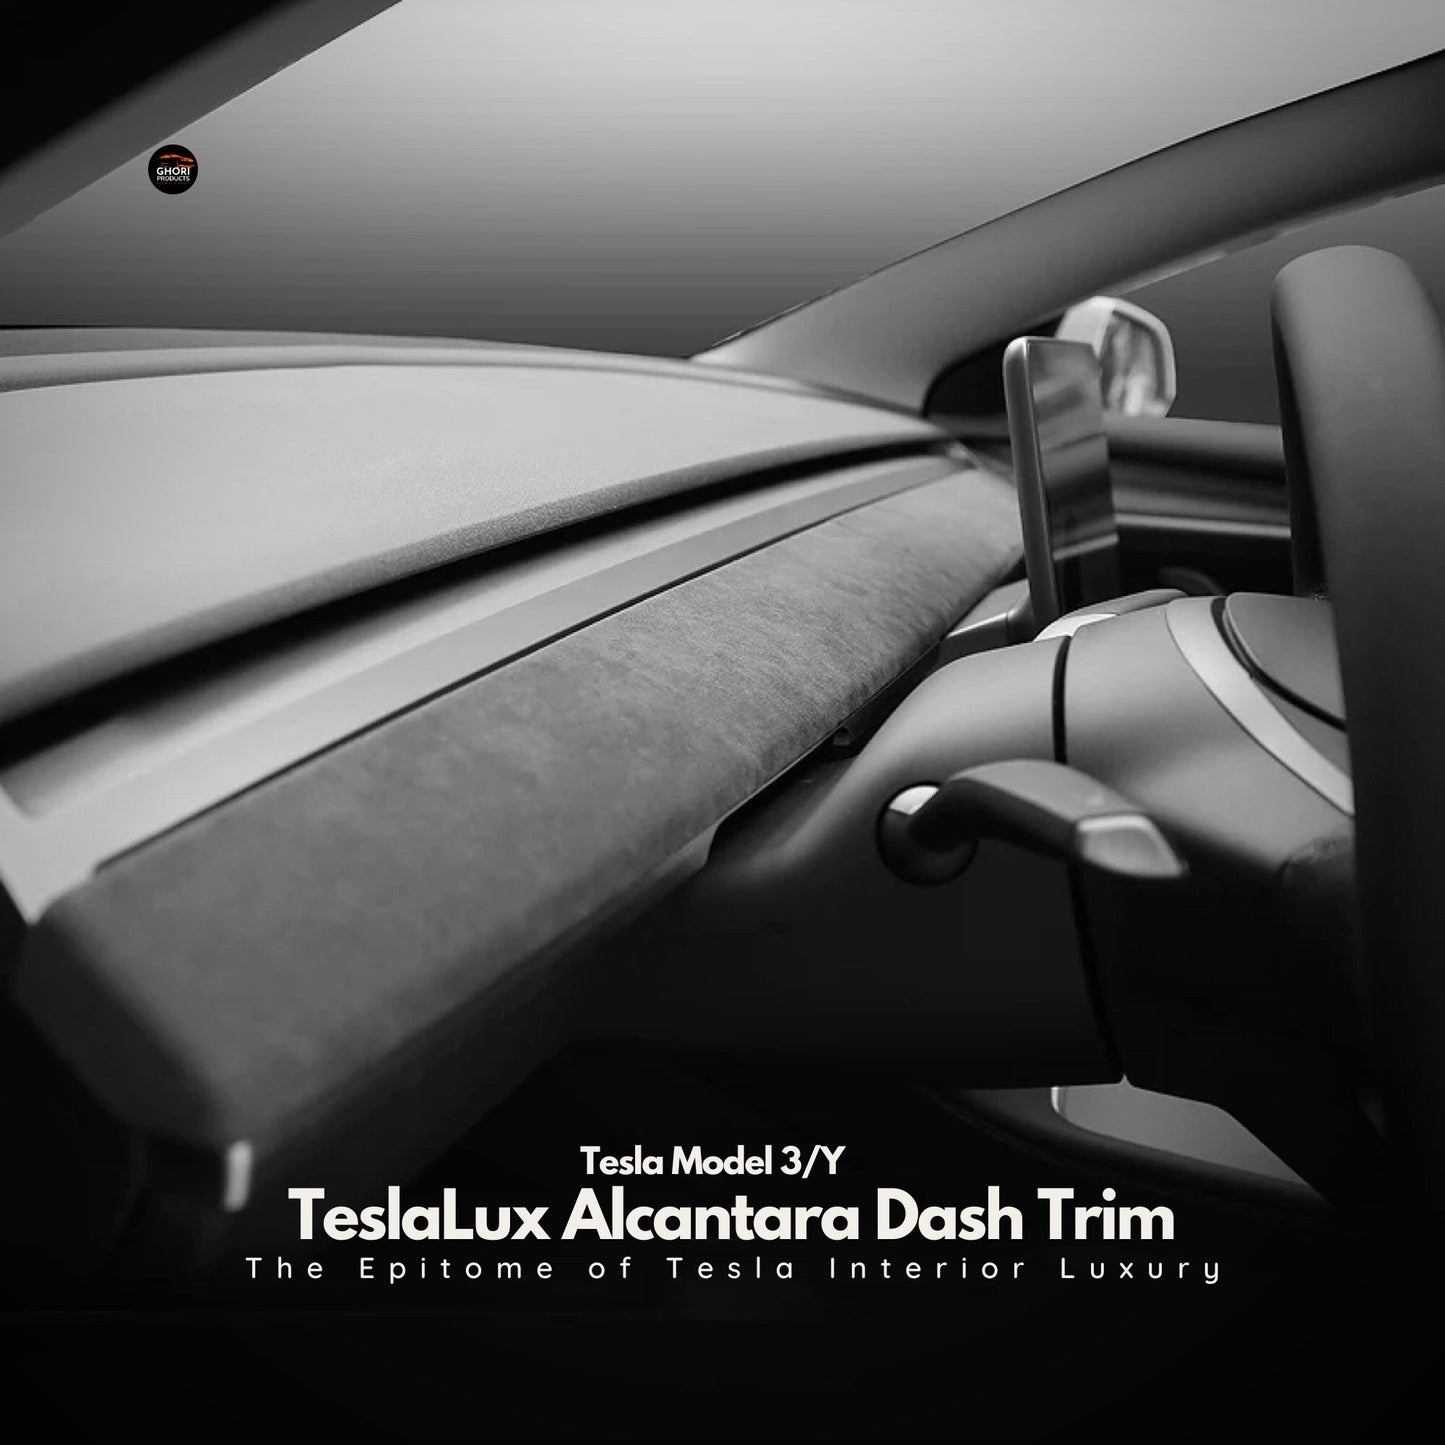 TeslaLux Alcantara Dash Trim - The Epitome of Tesla Interior Luxury